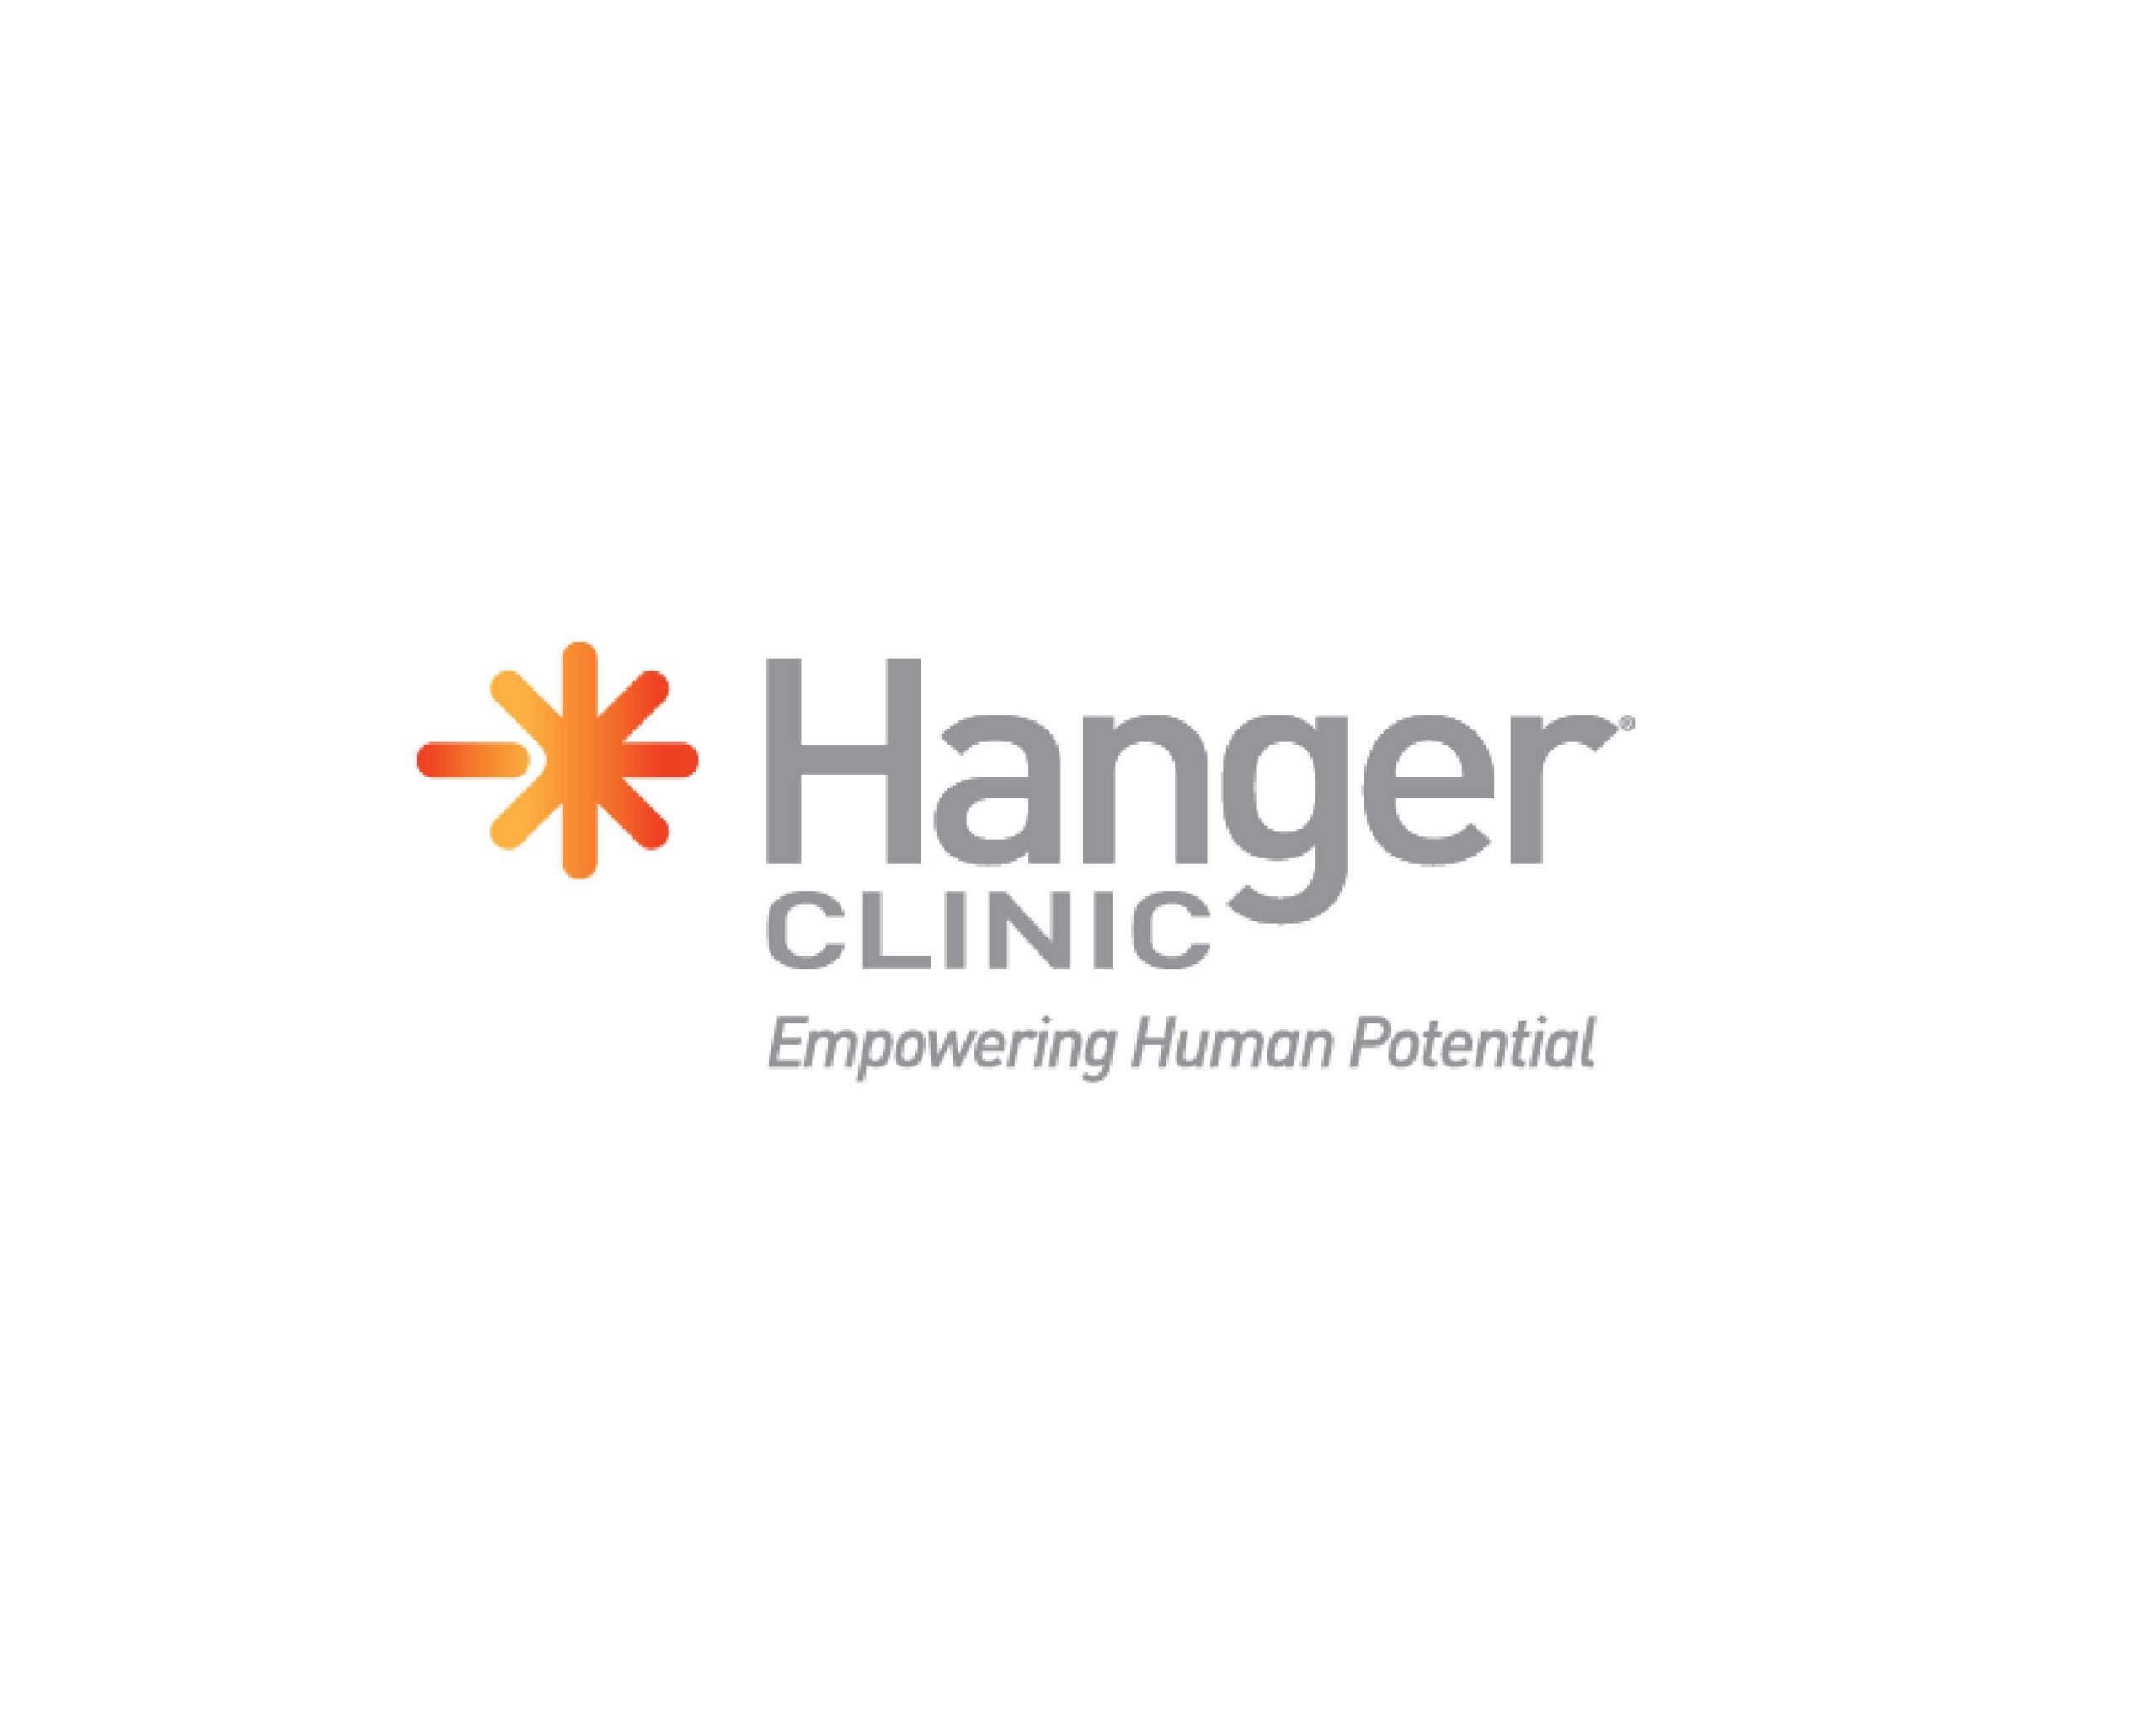 Hanger clinic logo